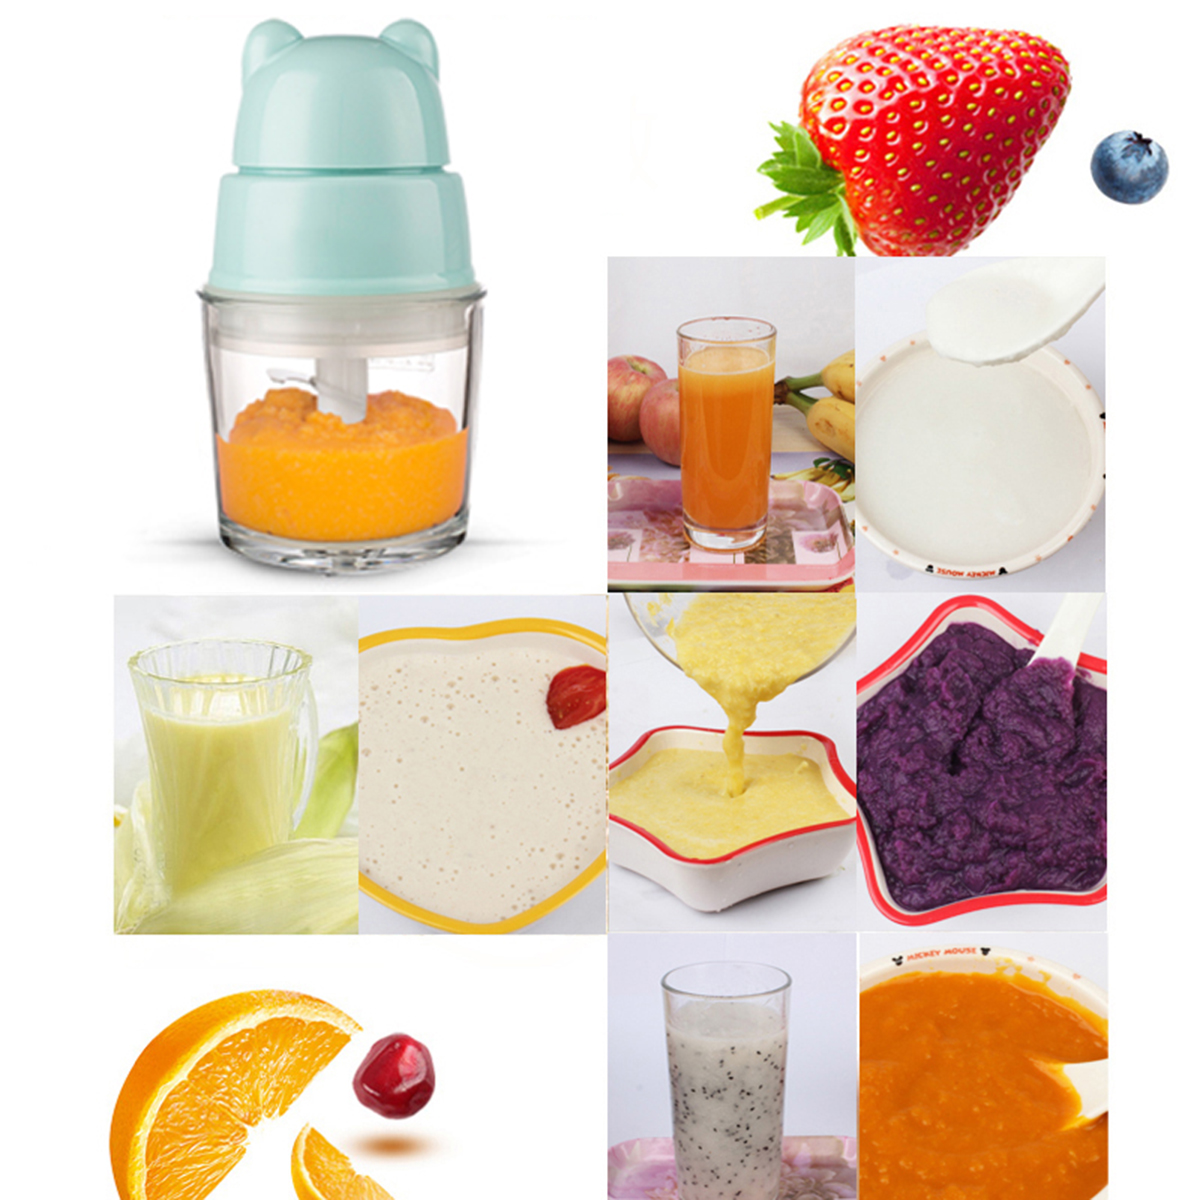 Baby-Food-Maker-Electric-Chopper-Vegetable-Fruit-Meat-Mixer-Grinder-Blender-Slicer-1445900-3